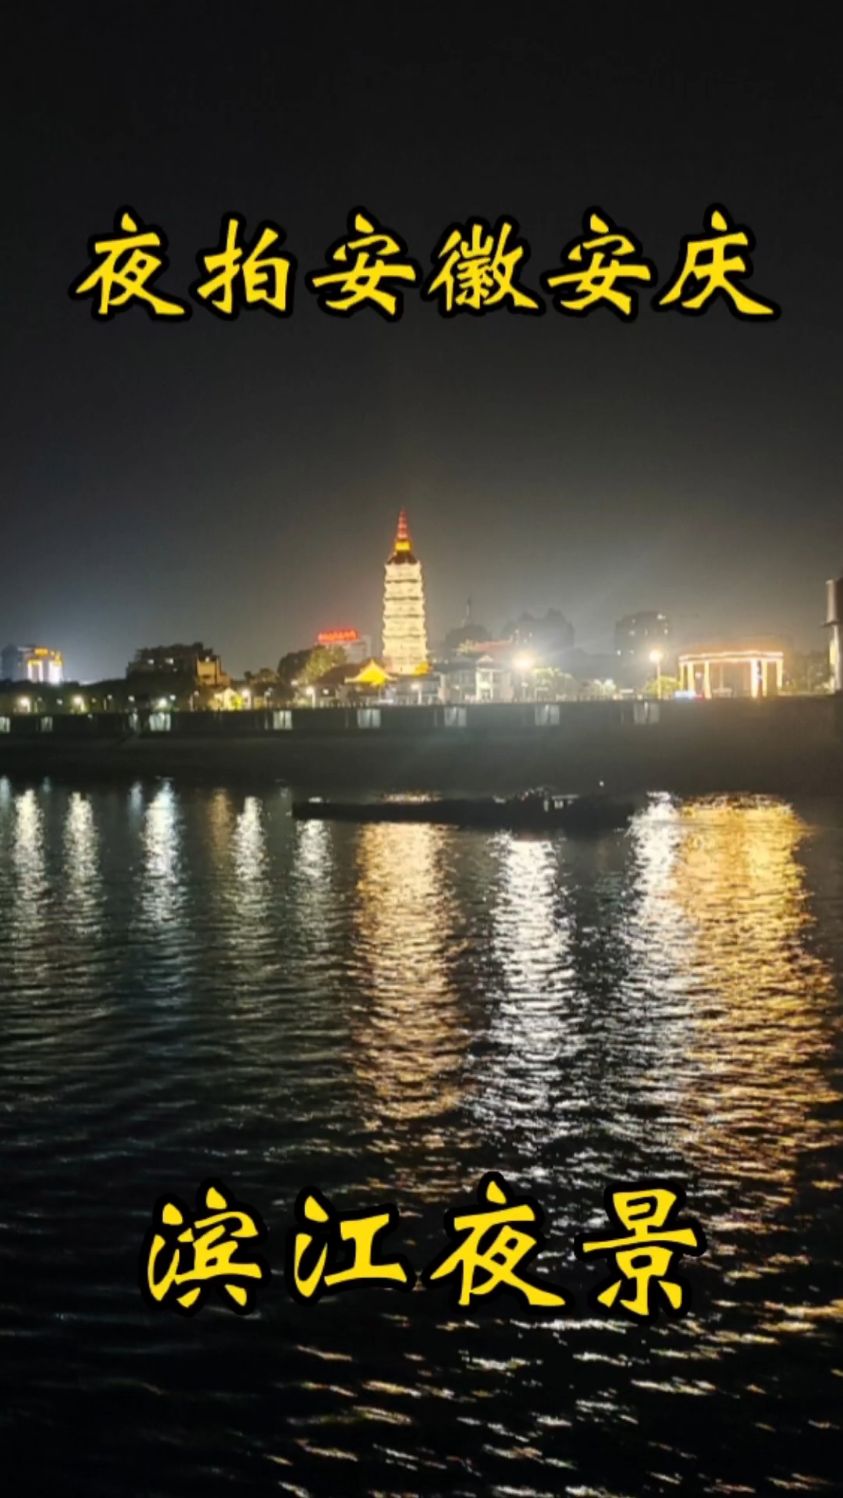 途径安徽省安庆市,实拍安庆滨江城市夜景